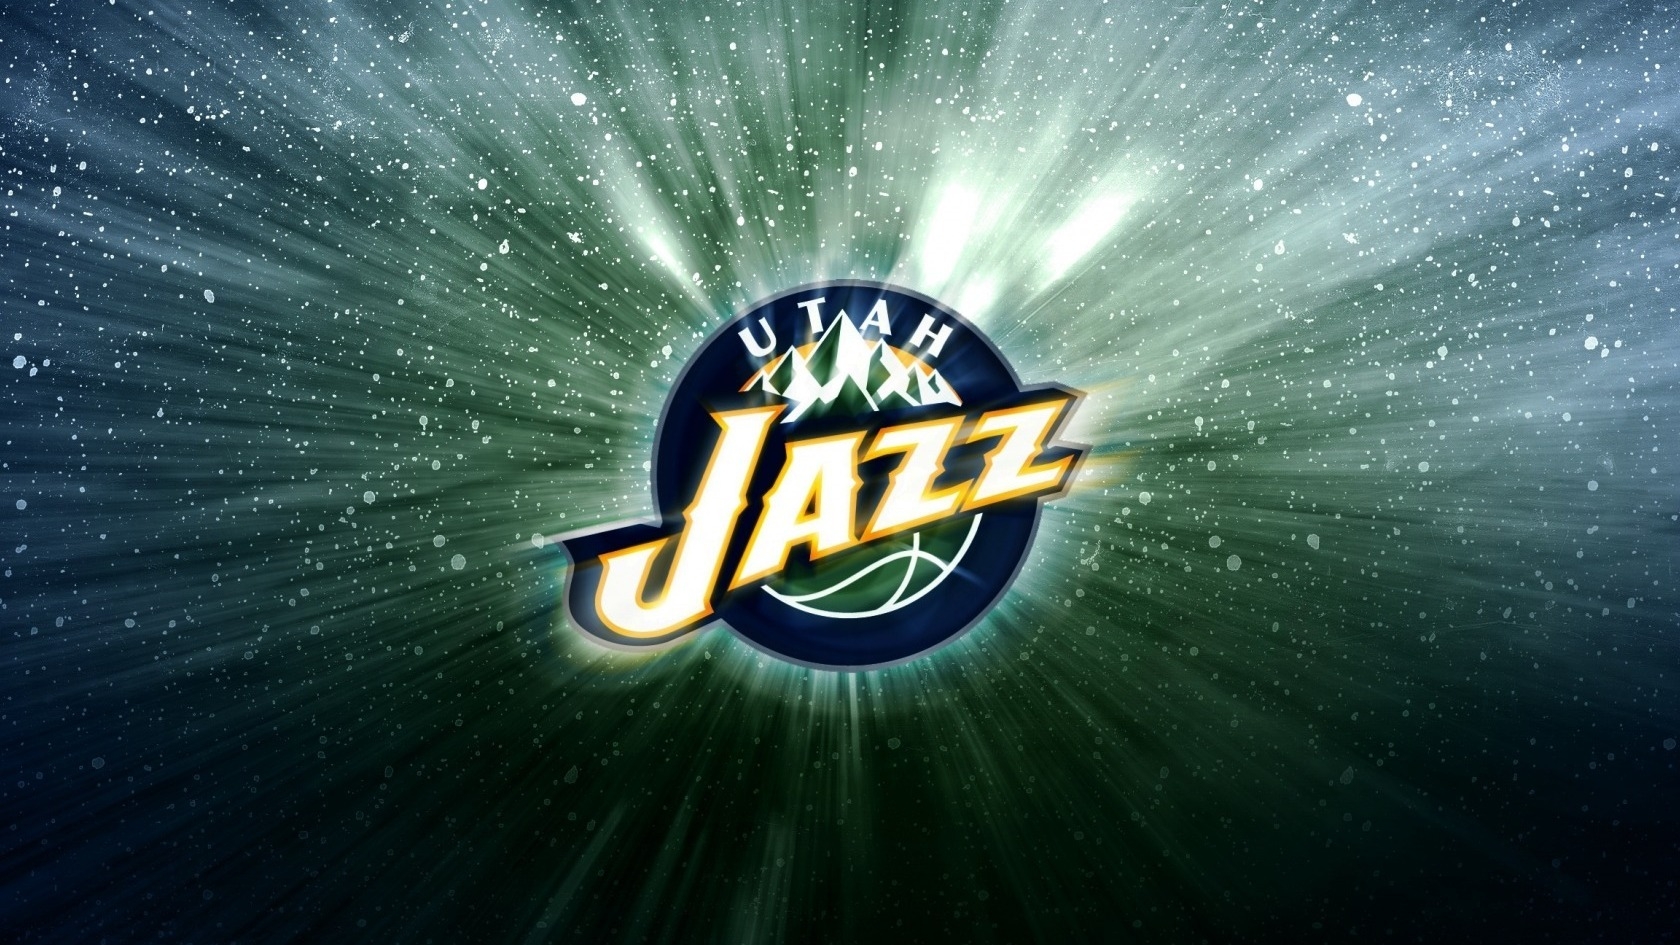 Utah Jazz  for 1680 x 945 HDTV resolution